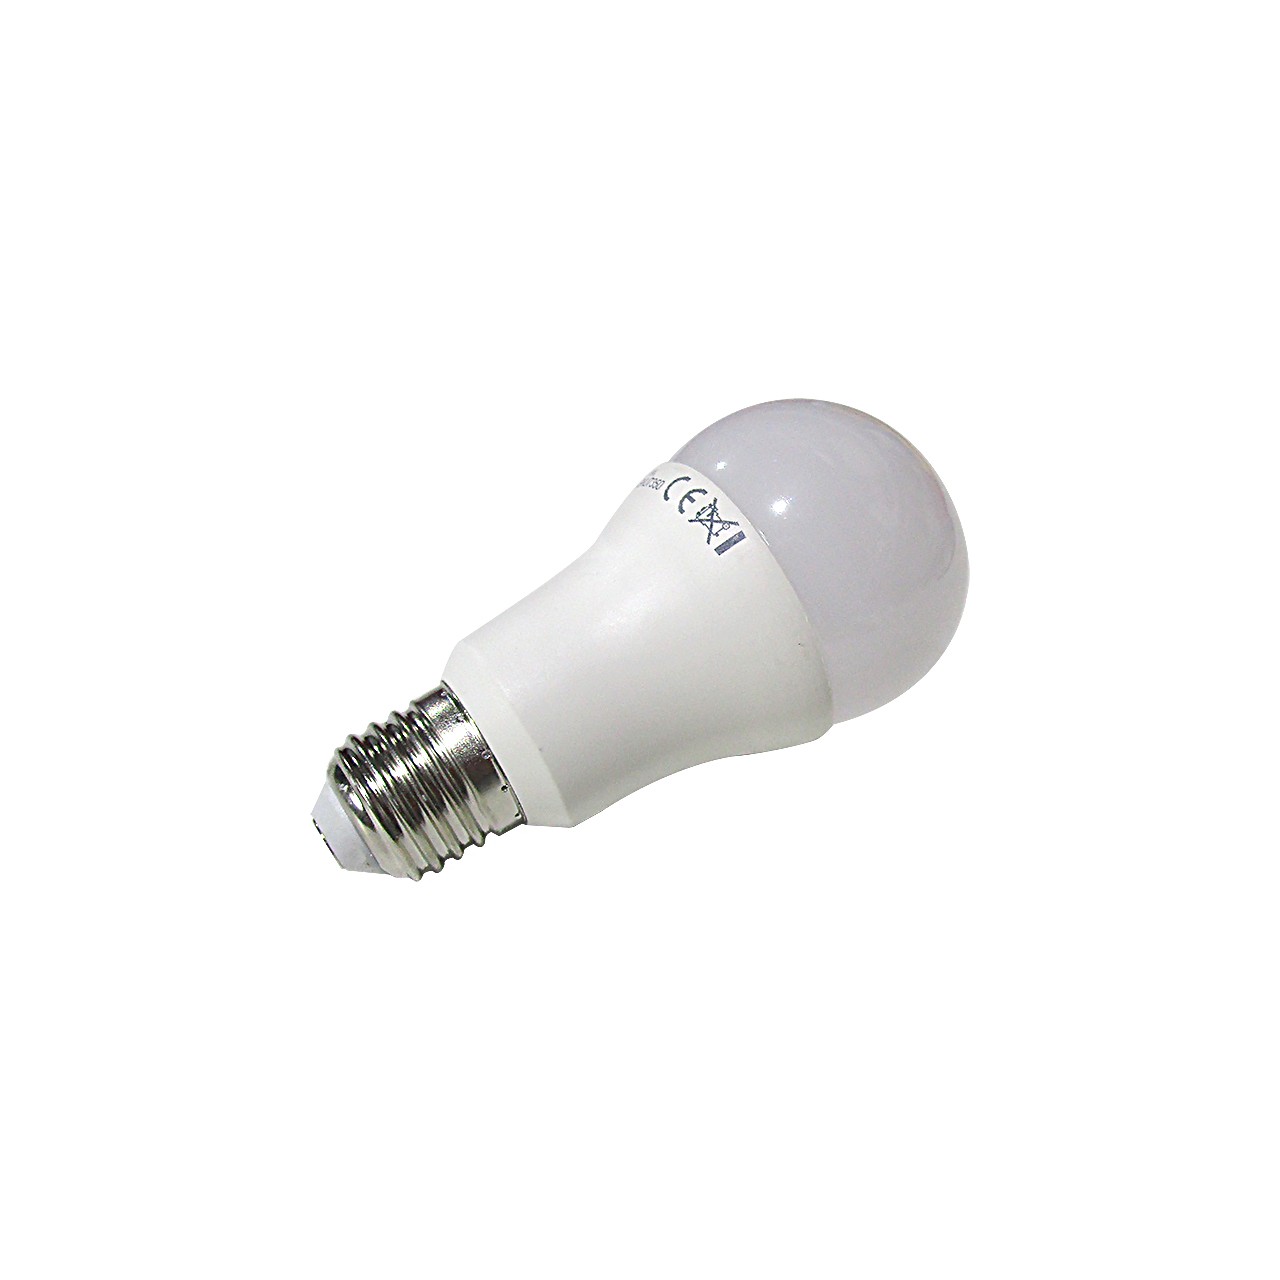 Ampoule E27 9W blanc variable, dimmable, FUT109 MiBoxer